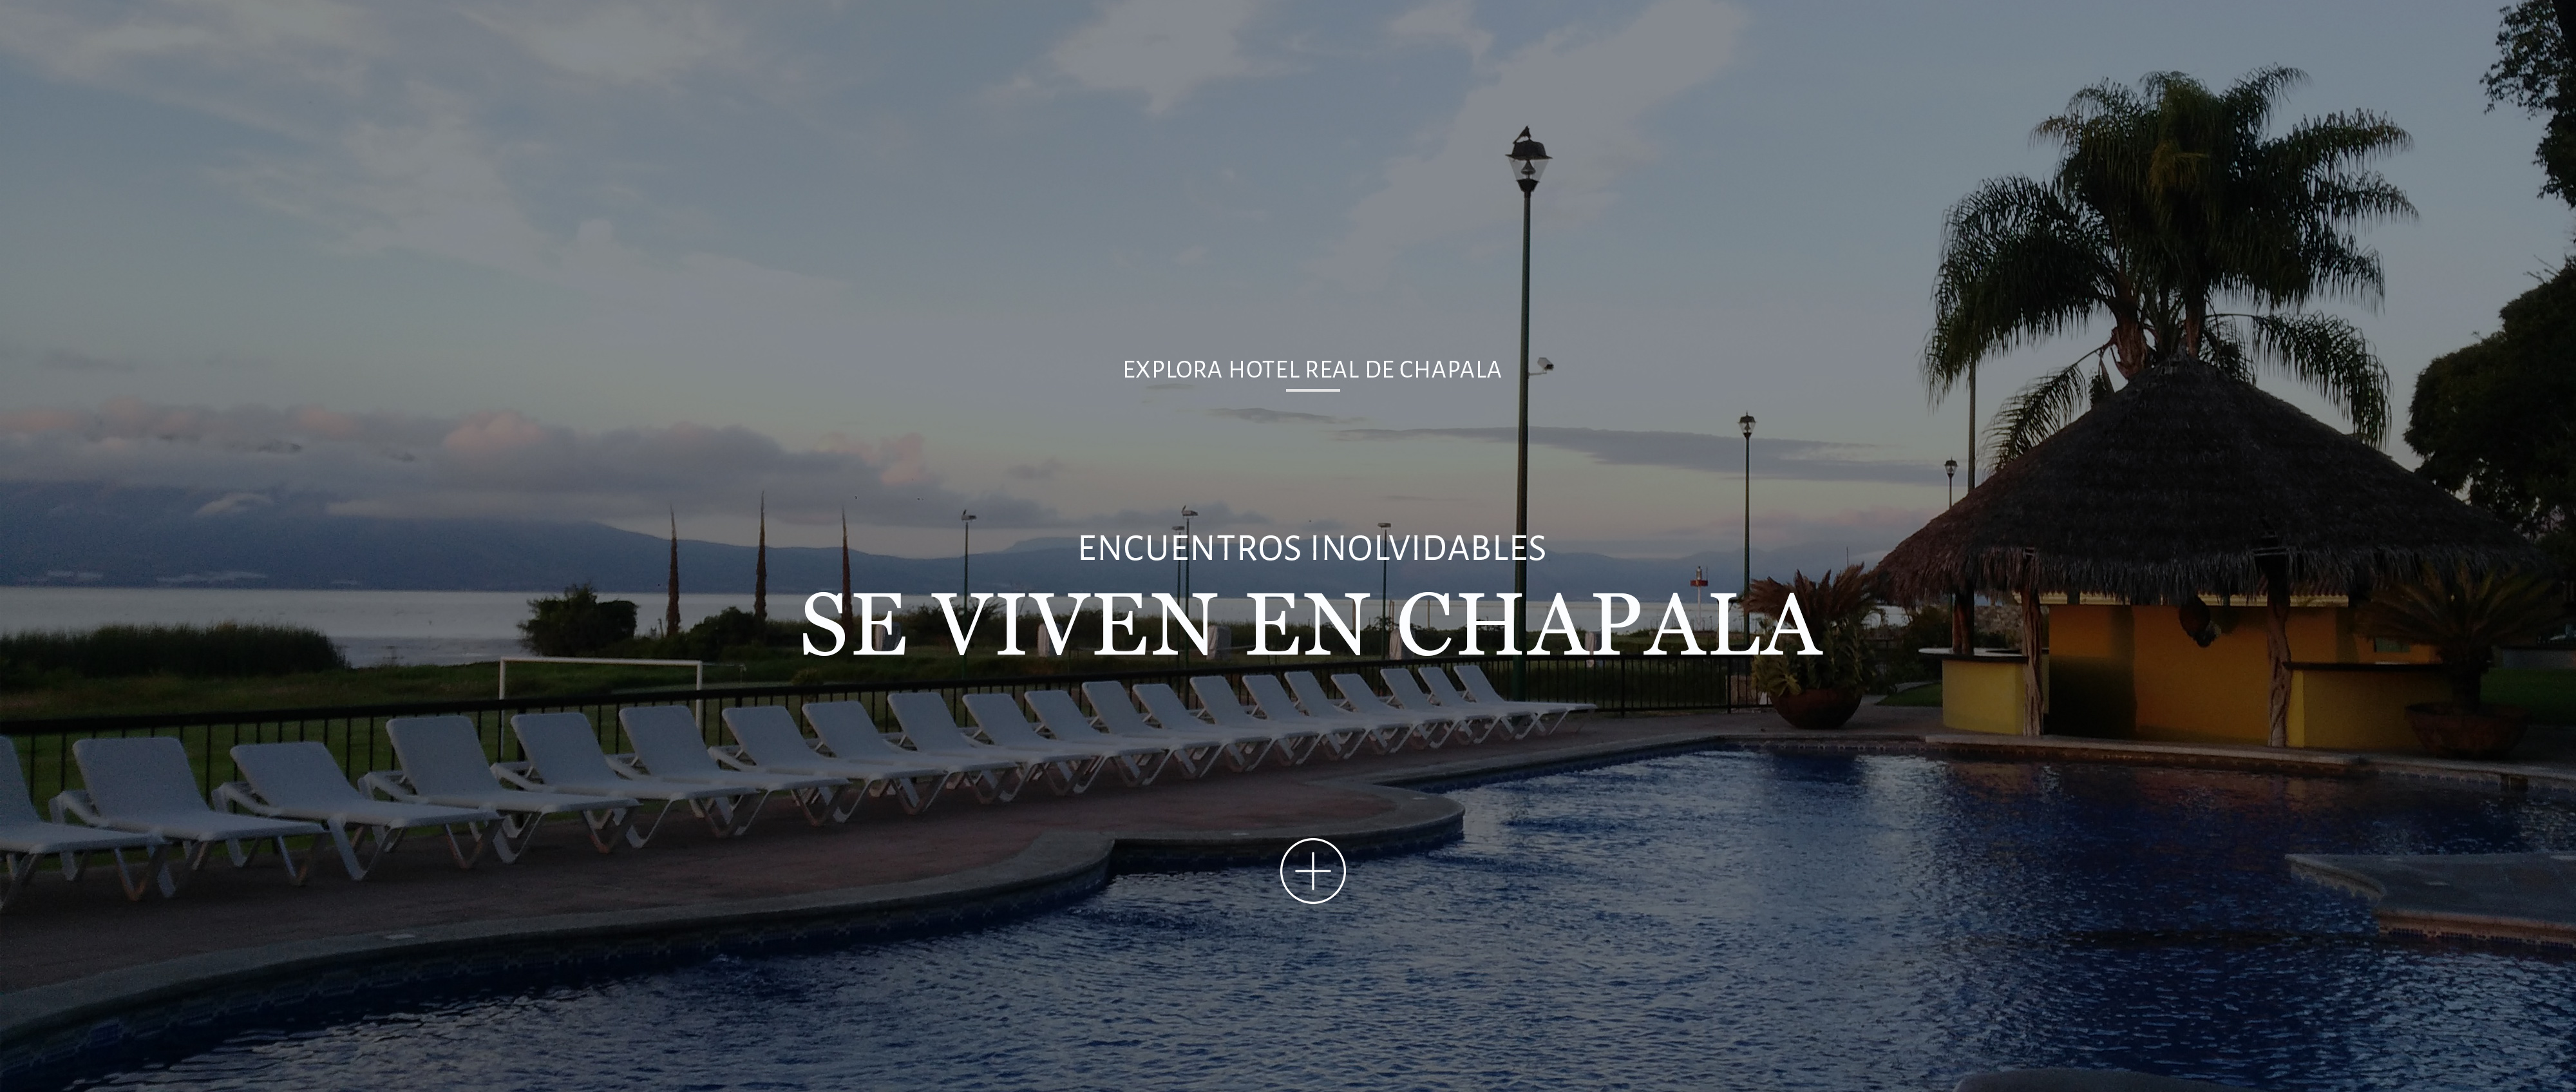 hotel Real de Chapala, Vacaciones, Eventos, Grupos, descanso, ribera